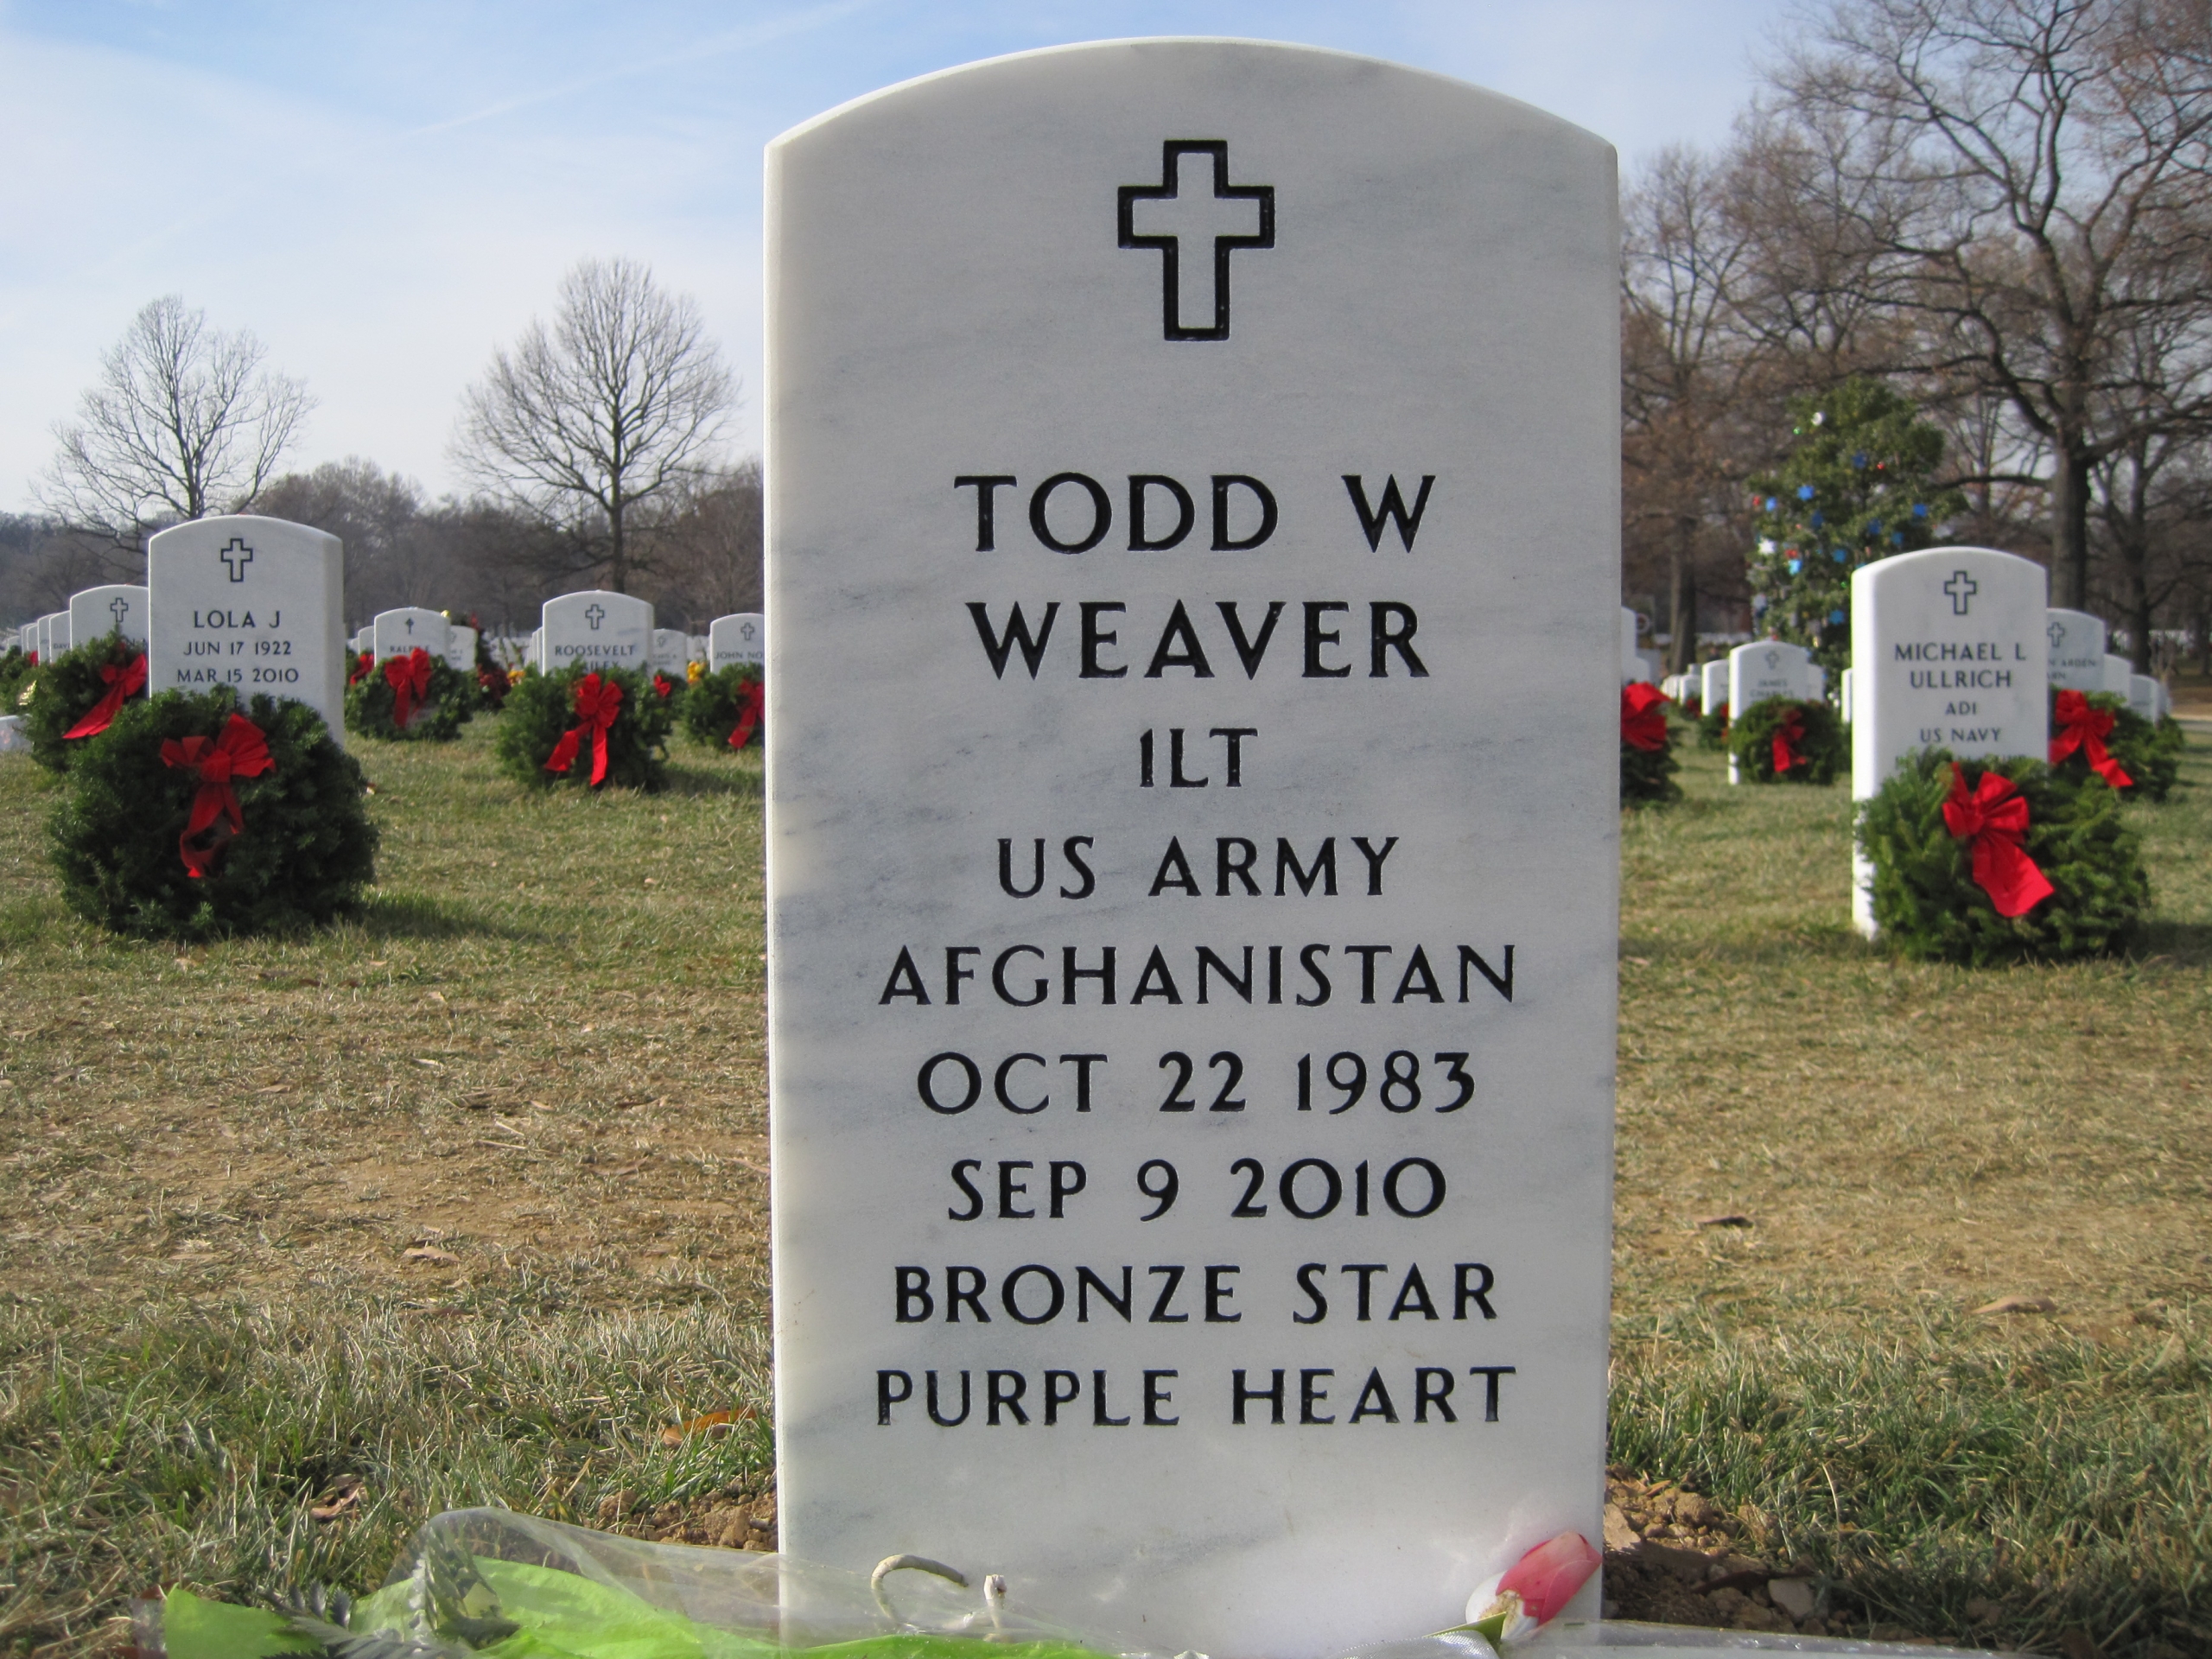 twweaver-gravesite-photo-by-eileen-horan-december-2010-002